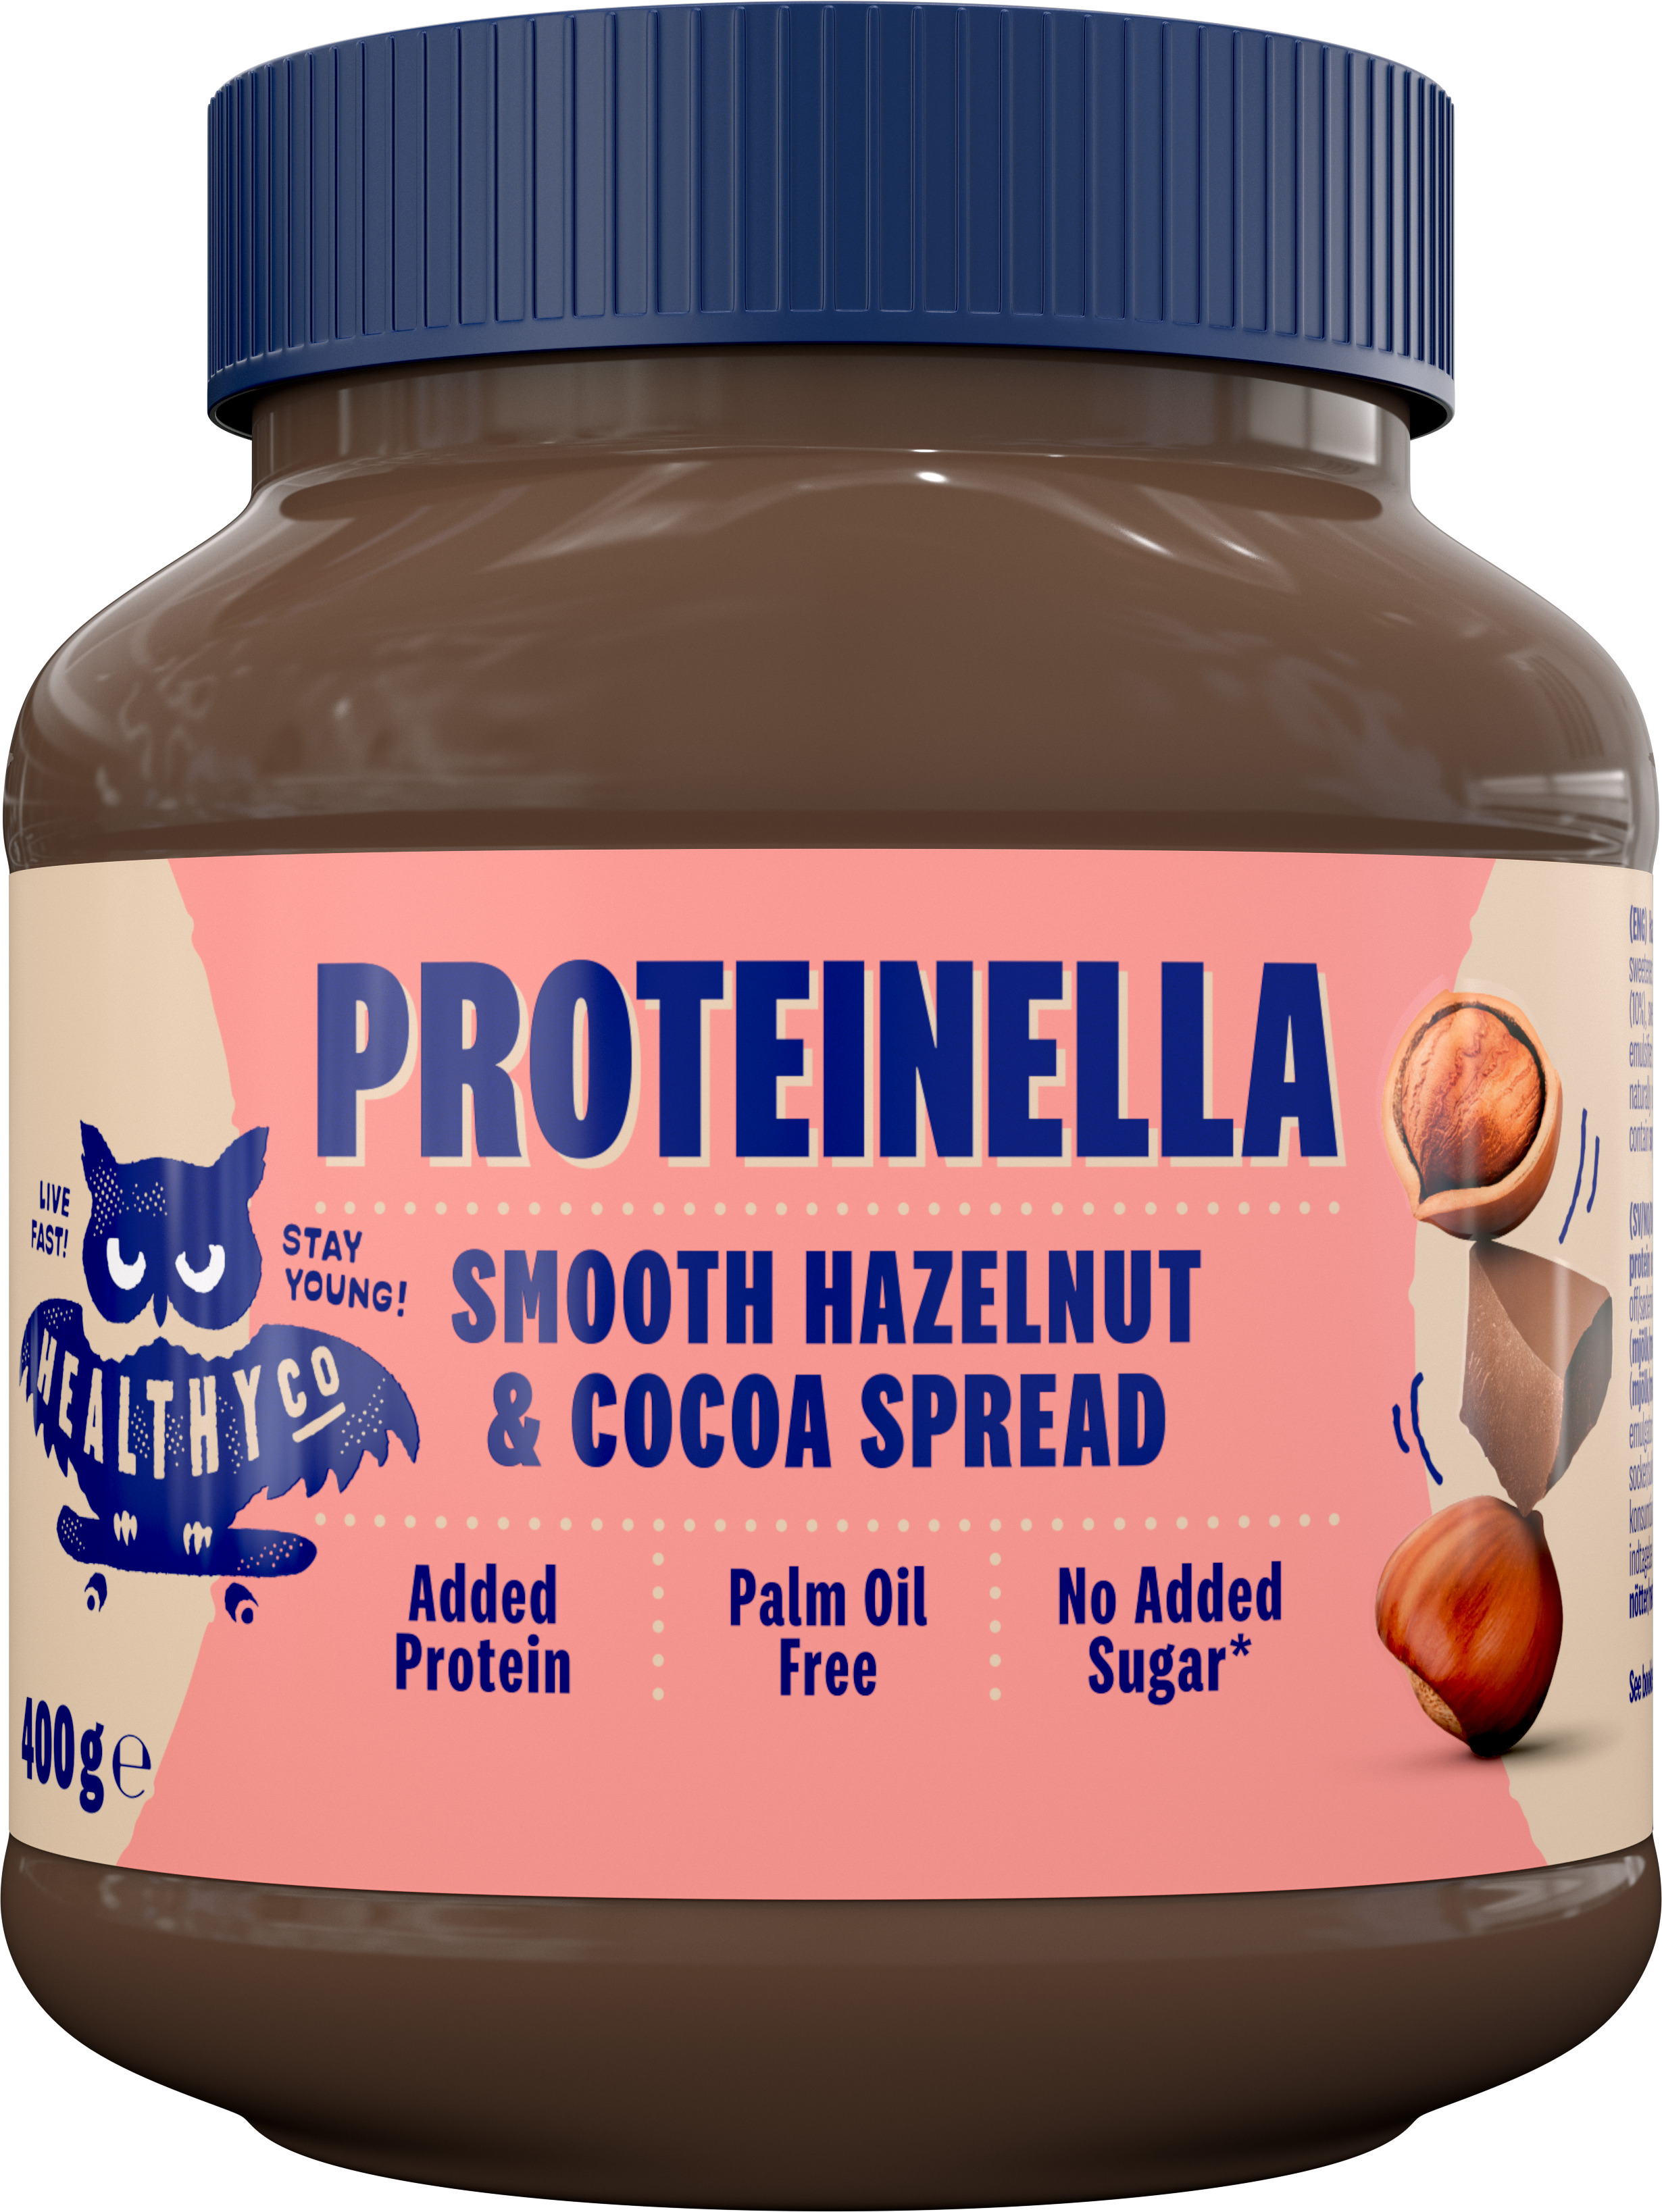 HealthyCo Proteinella Smooth Hazelnut & Cocoa Spread 400 g